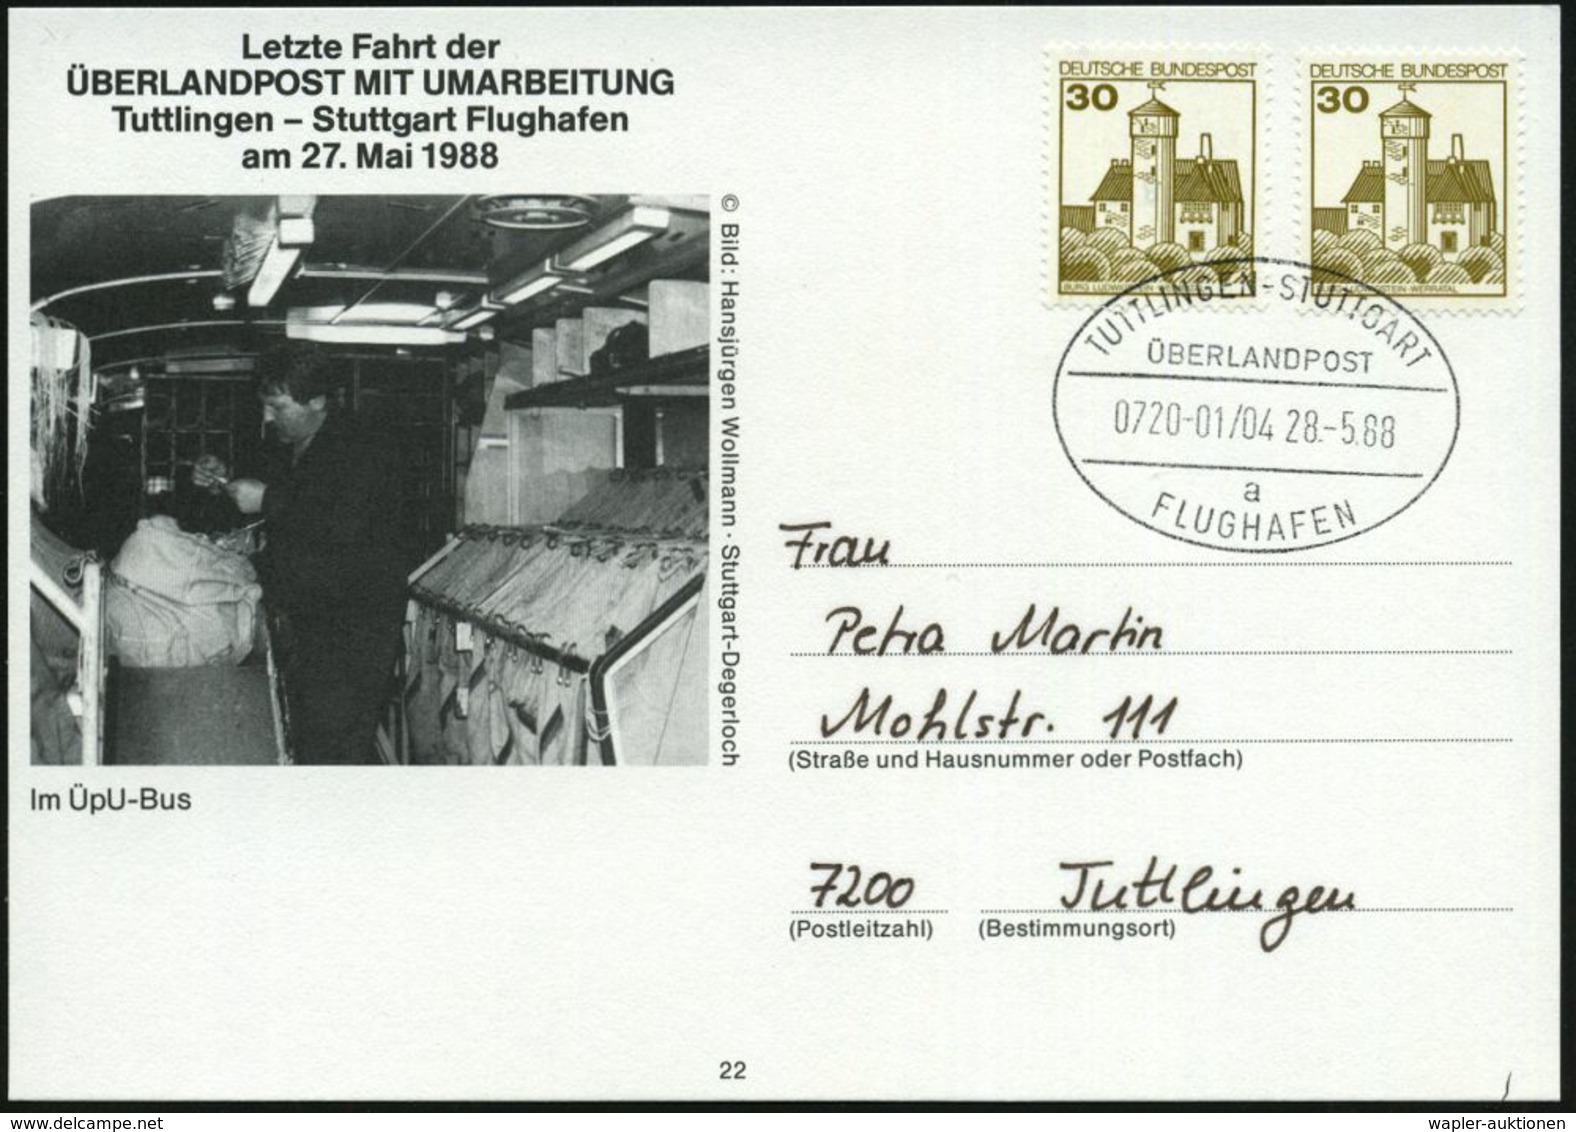 TUTTLINGEN-STUTTGART/ ÜBERLANDPOST/ 0720-01/ 04/ A/ FLUGHAFEN 1988 (28.5.) Oval-Stempel Auf Sonder-Kt.: Letzte Fahrt (Po - Autos